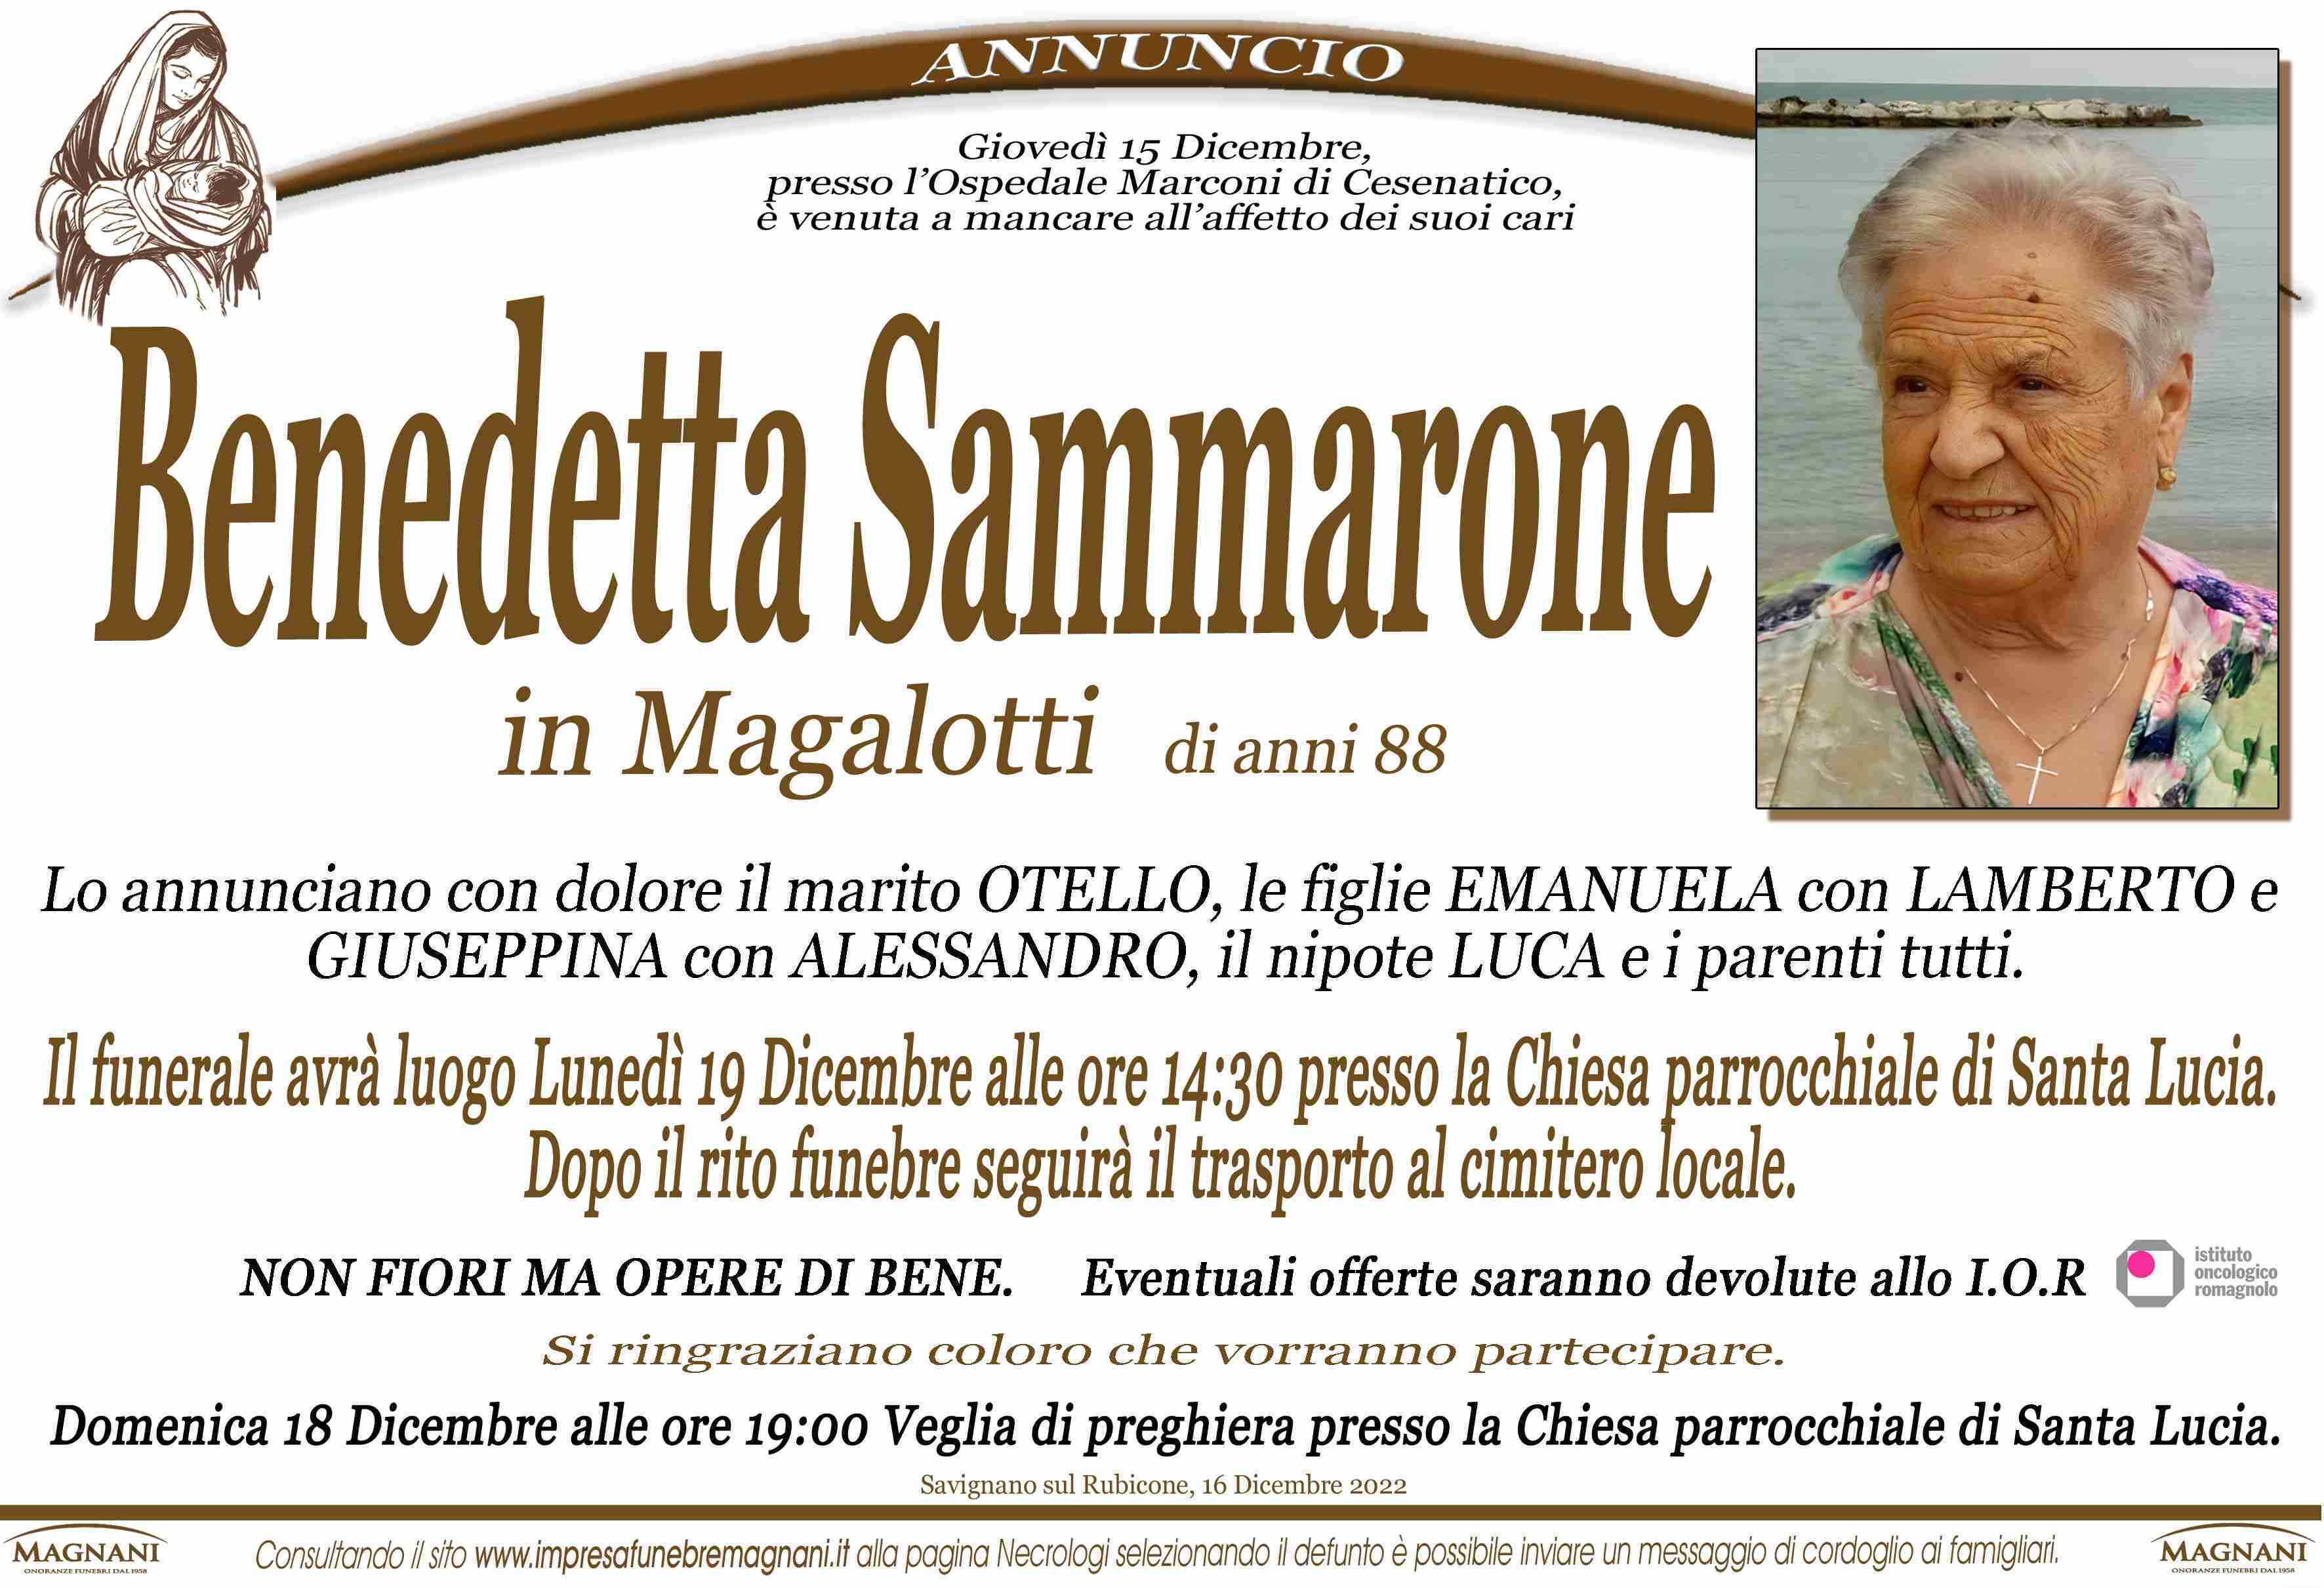 Benedetta Sammarone